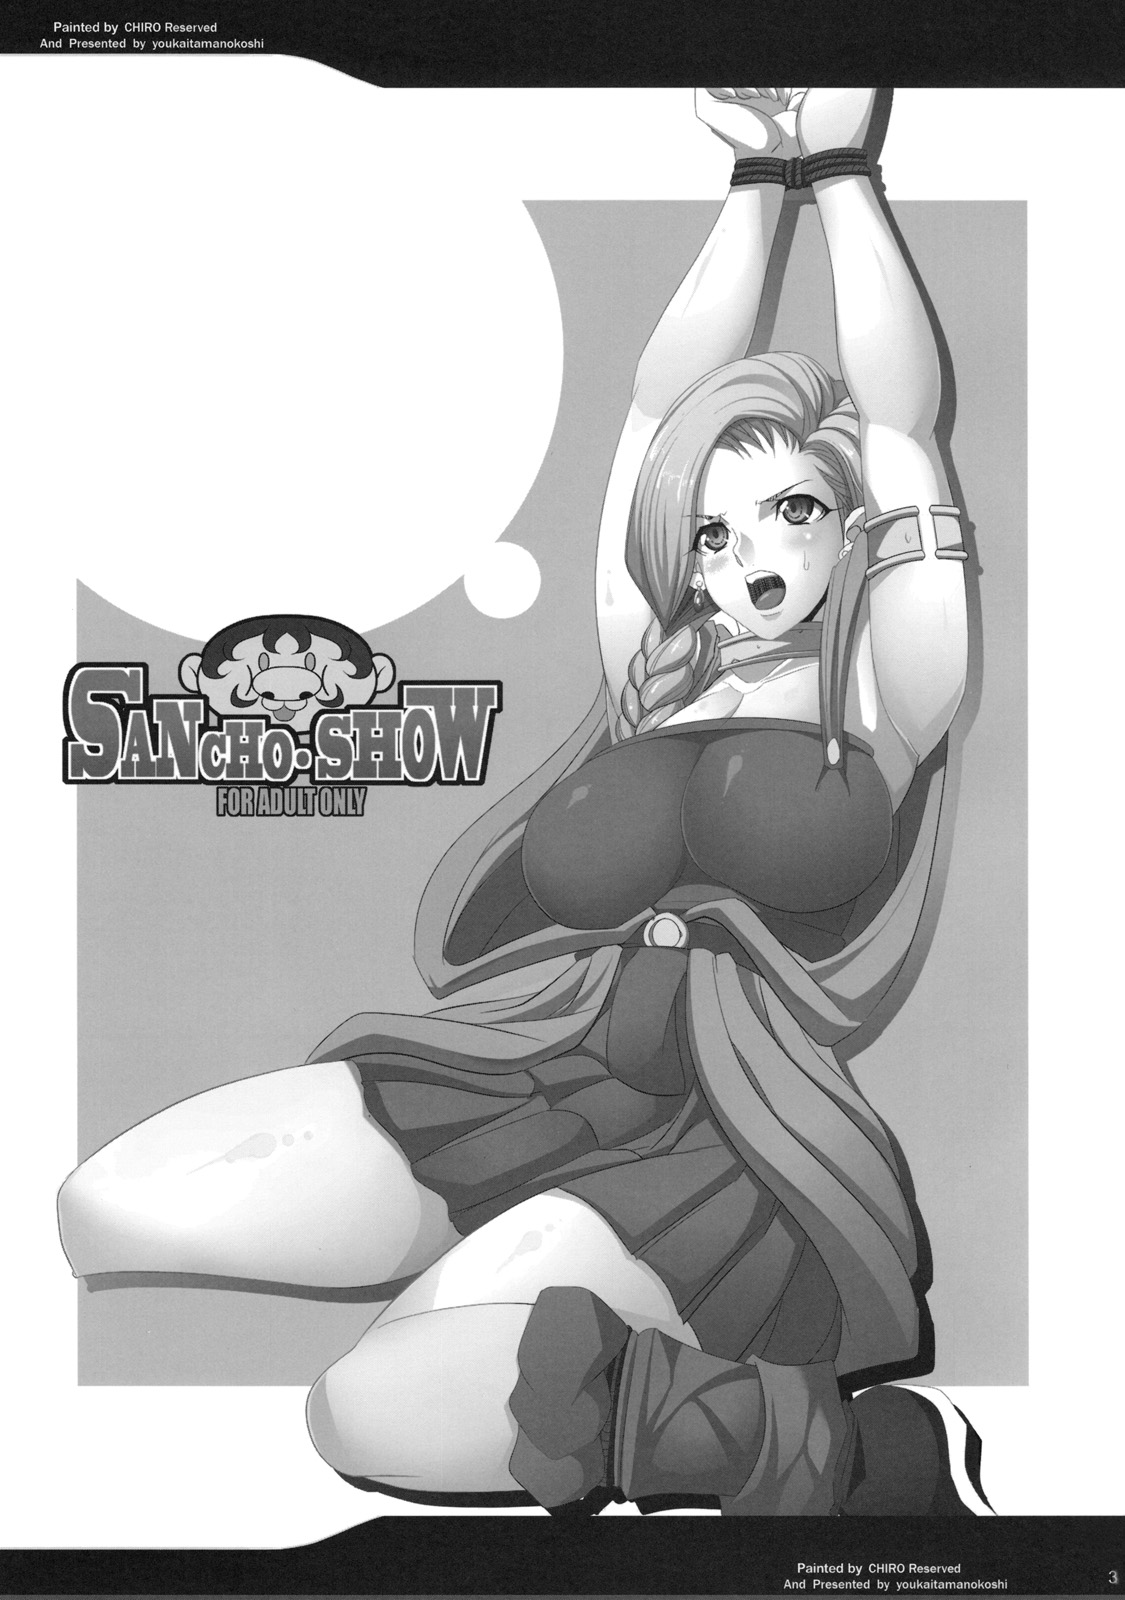 [Youkai Tamanokoshi (Chiro)] The Sancho Show 2 [Eng] (Dragon Quest 5)  